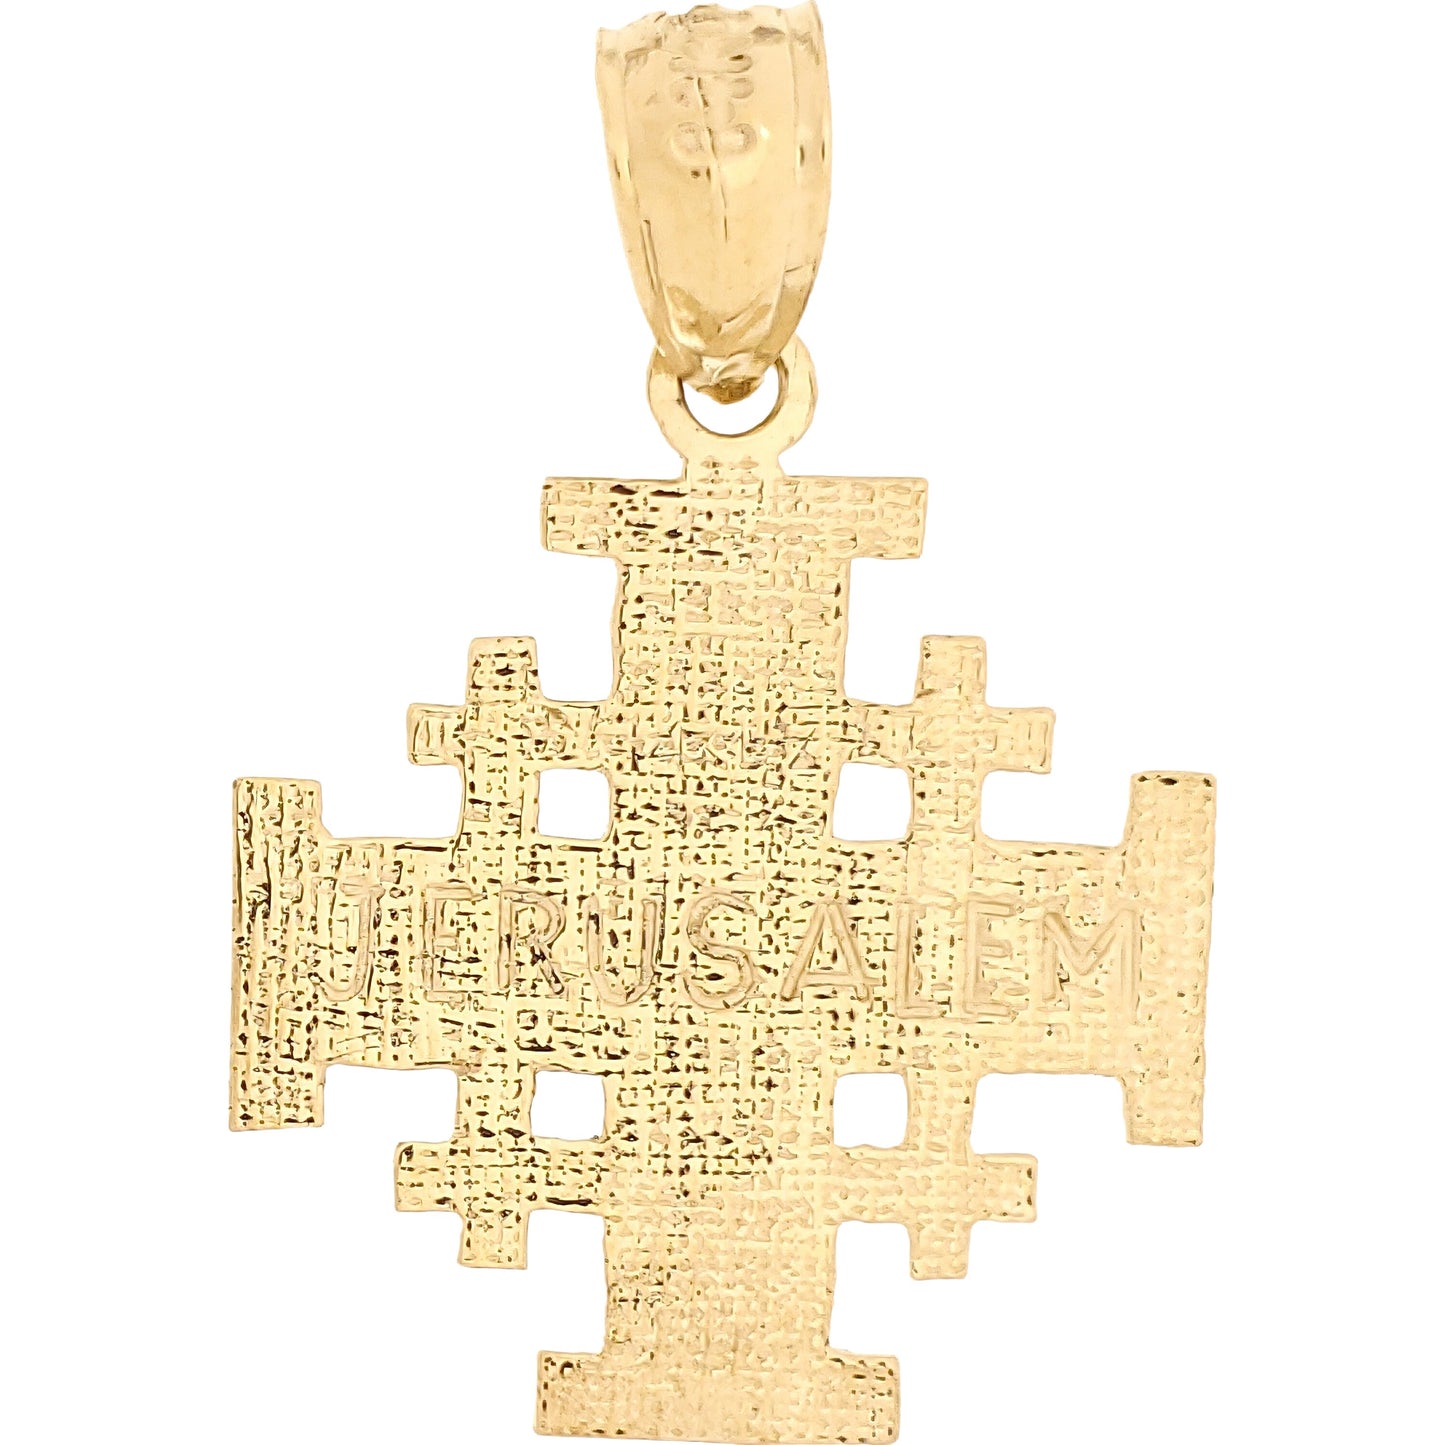 Jerusalem Cross Charm 14k Gold 19mm